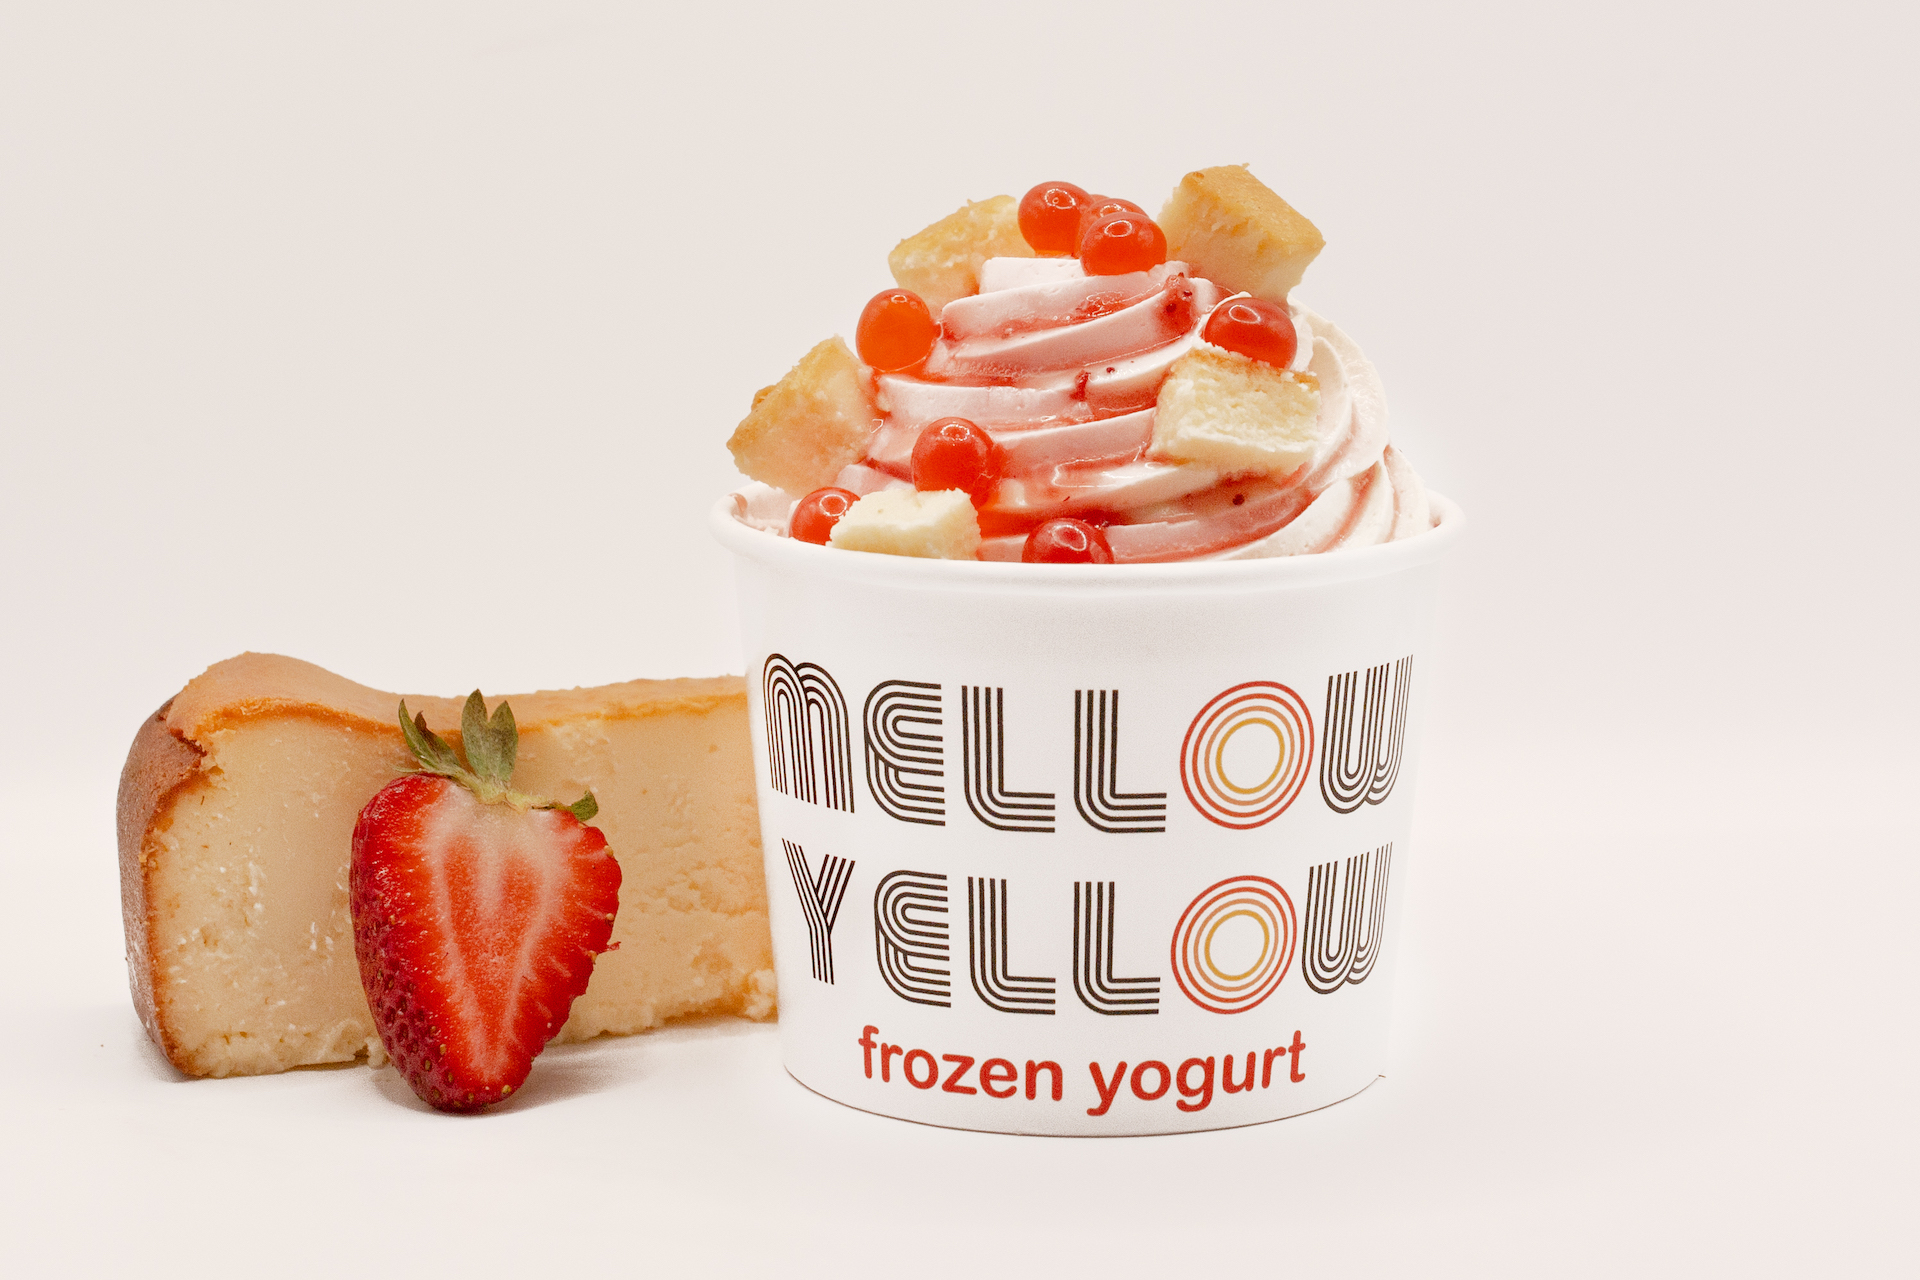 Mellow Yellow Frozen Yogurt dessert